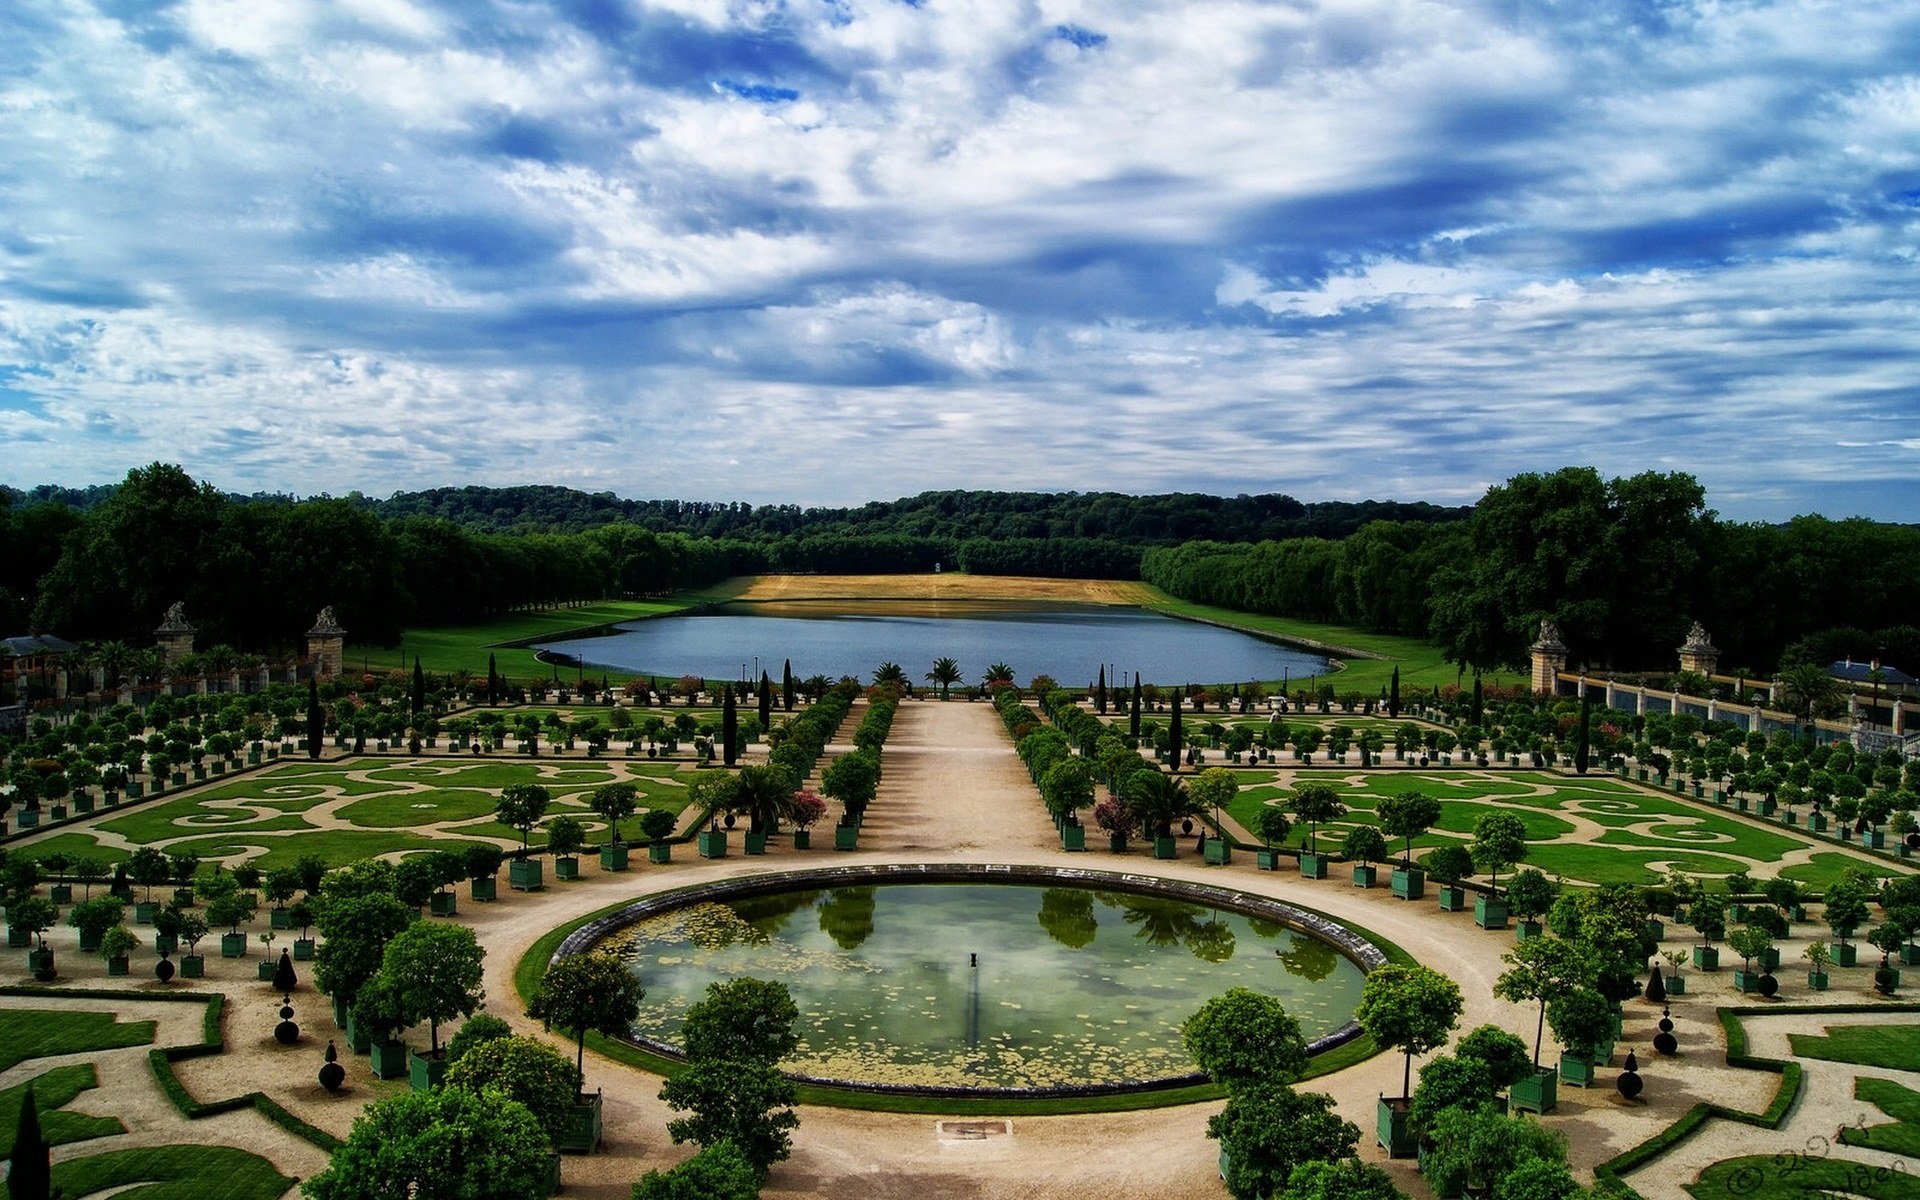 Французский версаль. Версальский дворец и парк. Французский парк Версальский парк. Дворец и парк в Версале Франция. Парковый ансамбль Версаля во Франции.